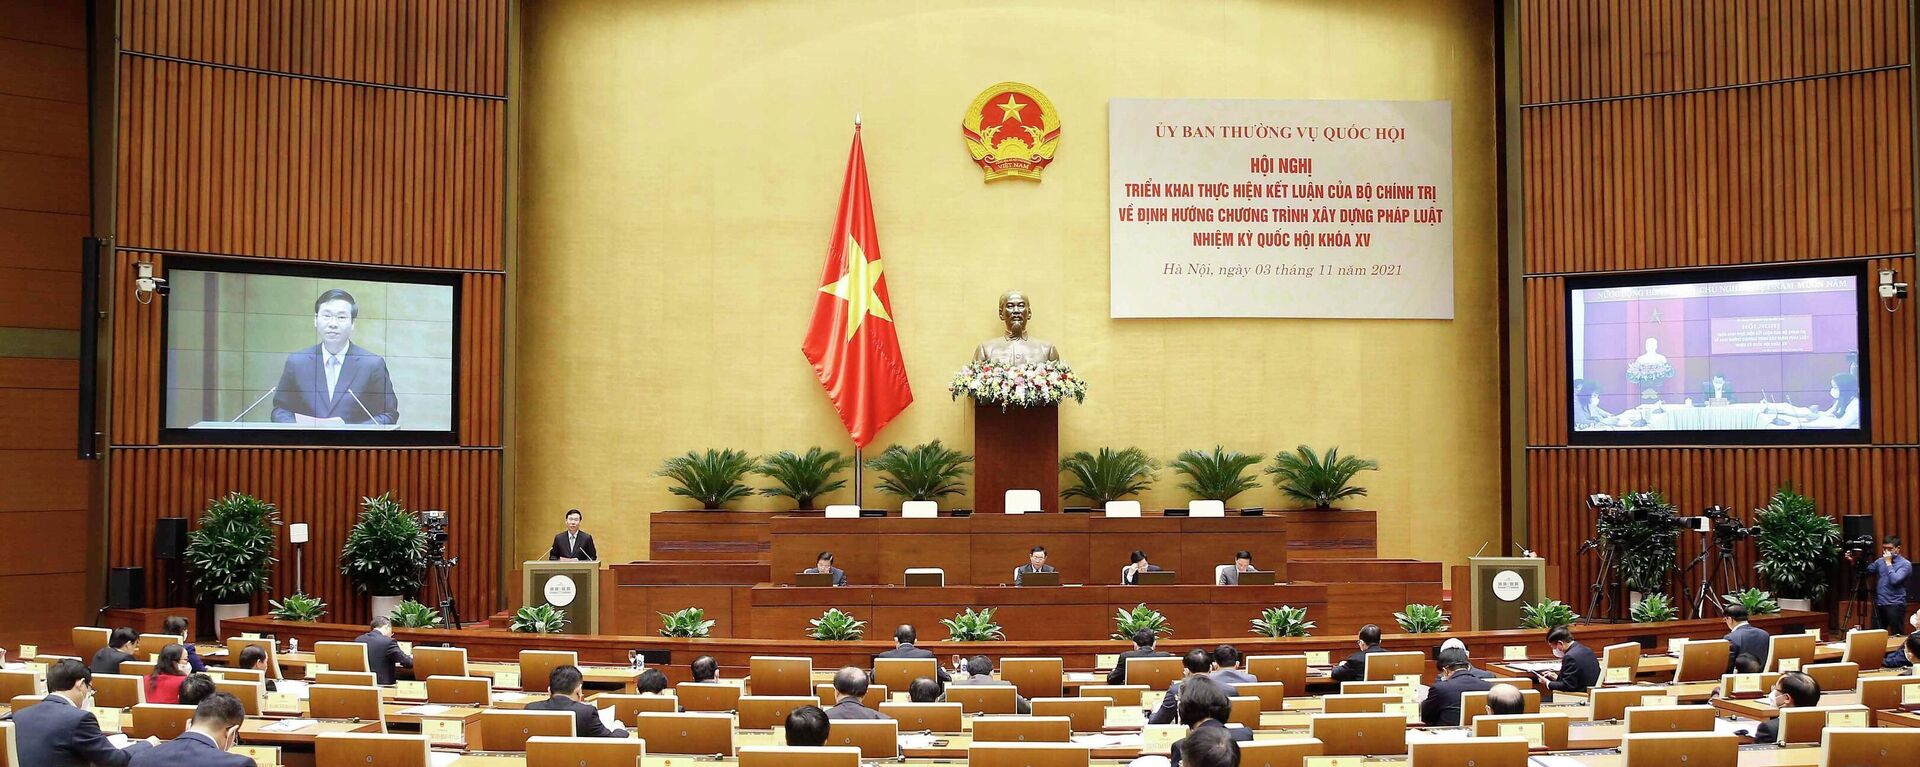 Hội nghị toàn quốc triển khai Kết luận của Bộ Chính trị về định hướng chương trình xây dựng pháp luật nhiệm kỳ Quốc hội khóa XV - Sputnik Việt Nam, 1920, 07.11.2021